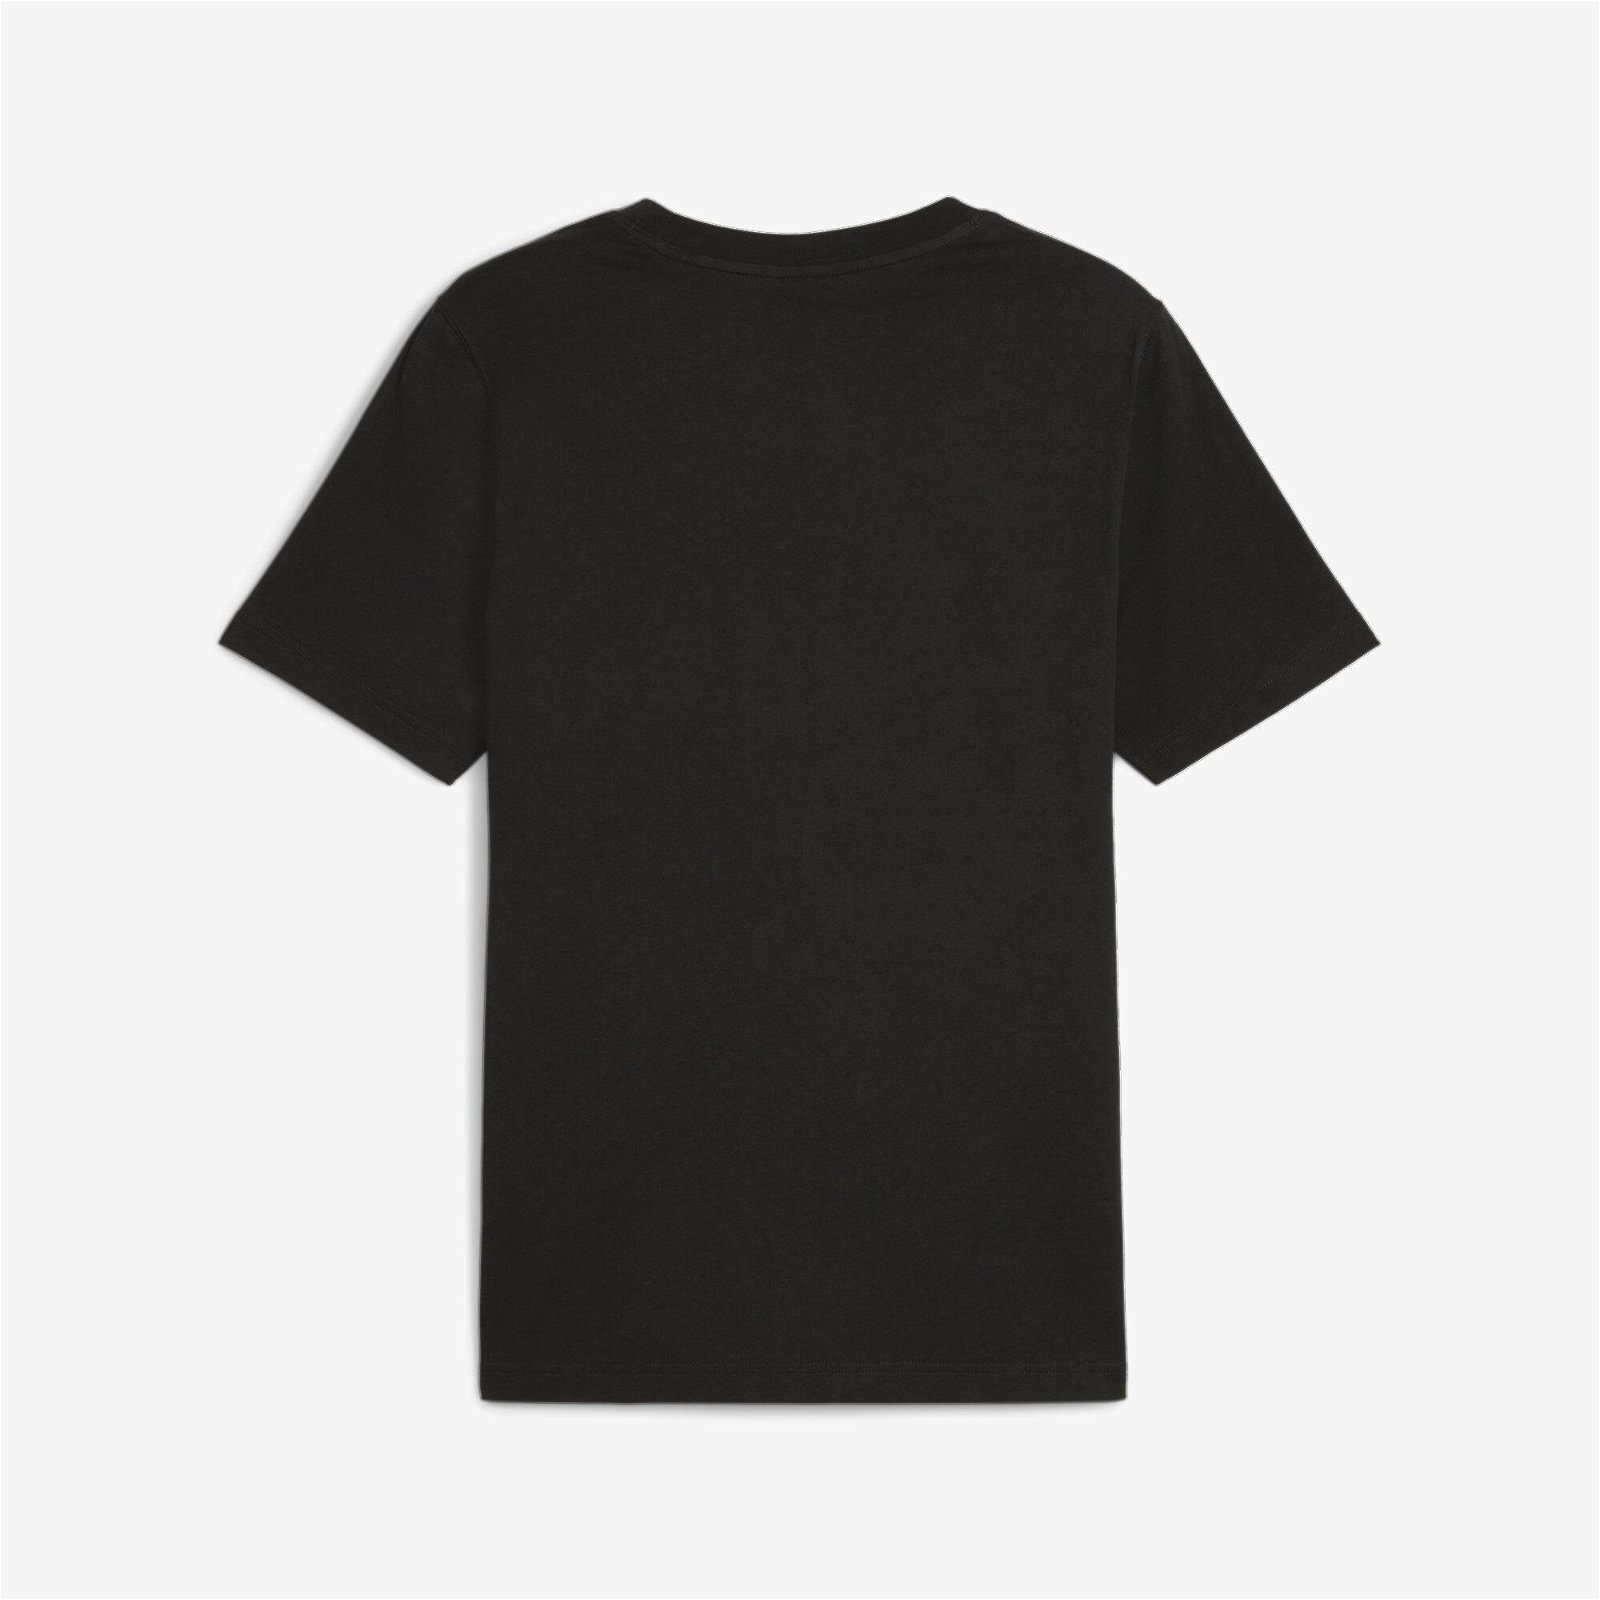 Puma Team Graphic Erkek Siyah T-Shirt